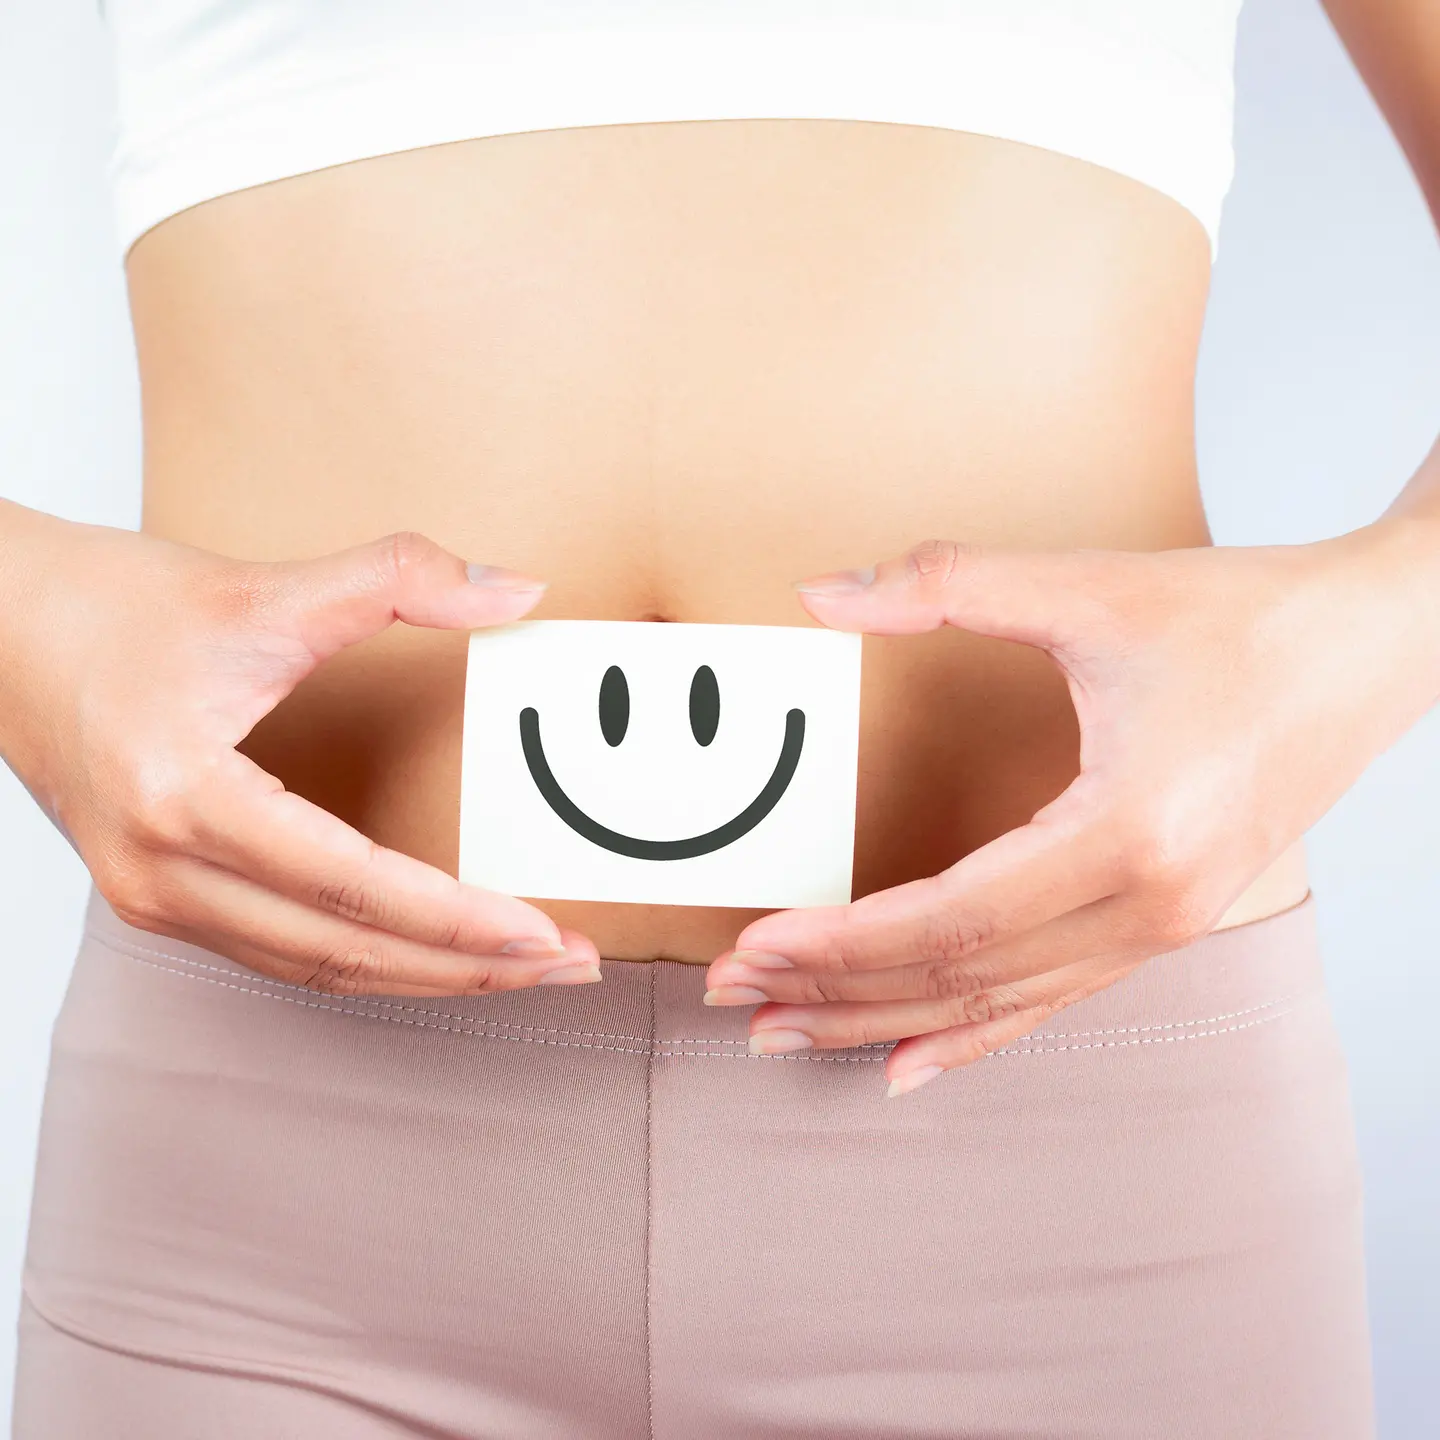 Eine Frau hält einen Zettel vor ihren Bauch. Auf dem Zettel ist ein positiver Smiley abgebildet.